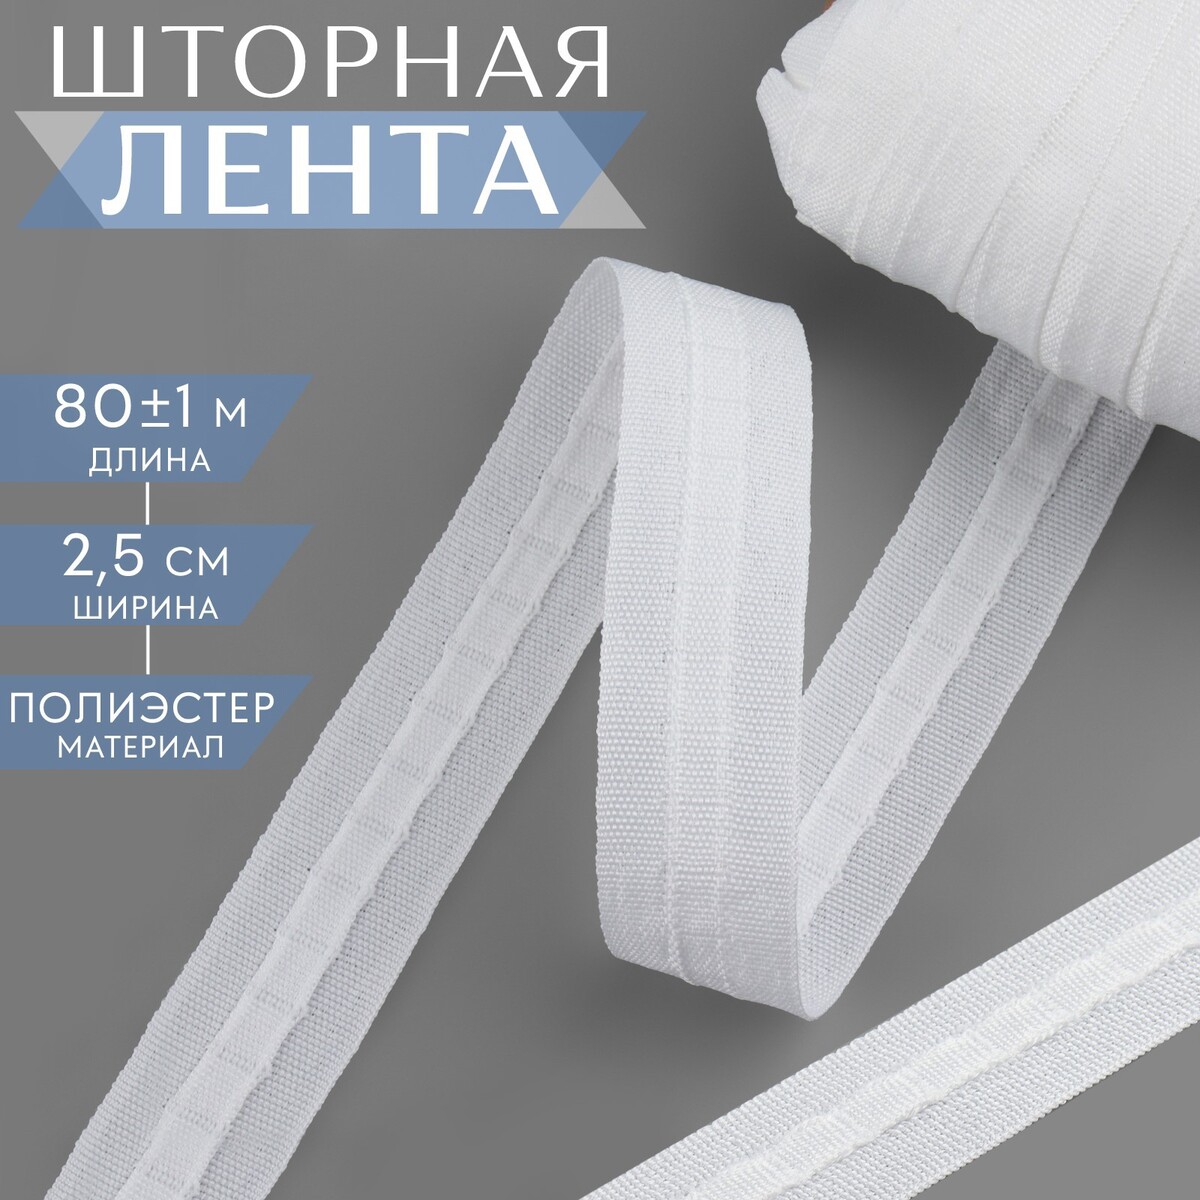 Шторная лента фиксированная сборка, матовая, 2,5 см, 80 ± 1 м, цвет белый шторная лента фиксированная сборка органза 6 см 50 ± 1 м прозрачный белый